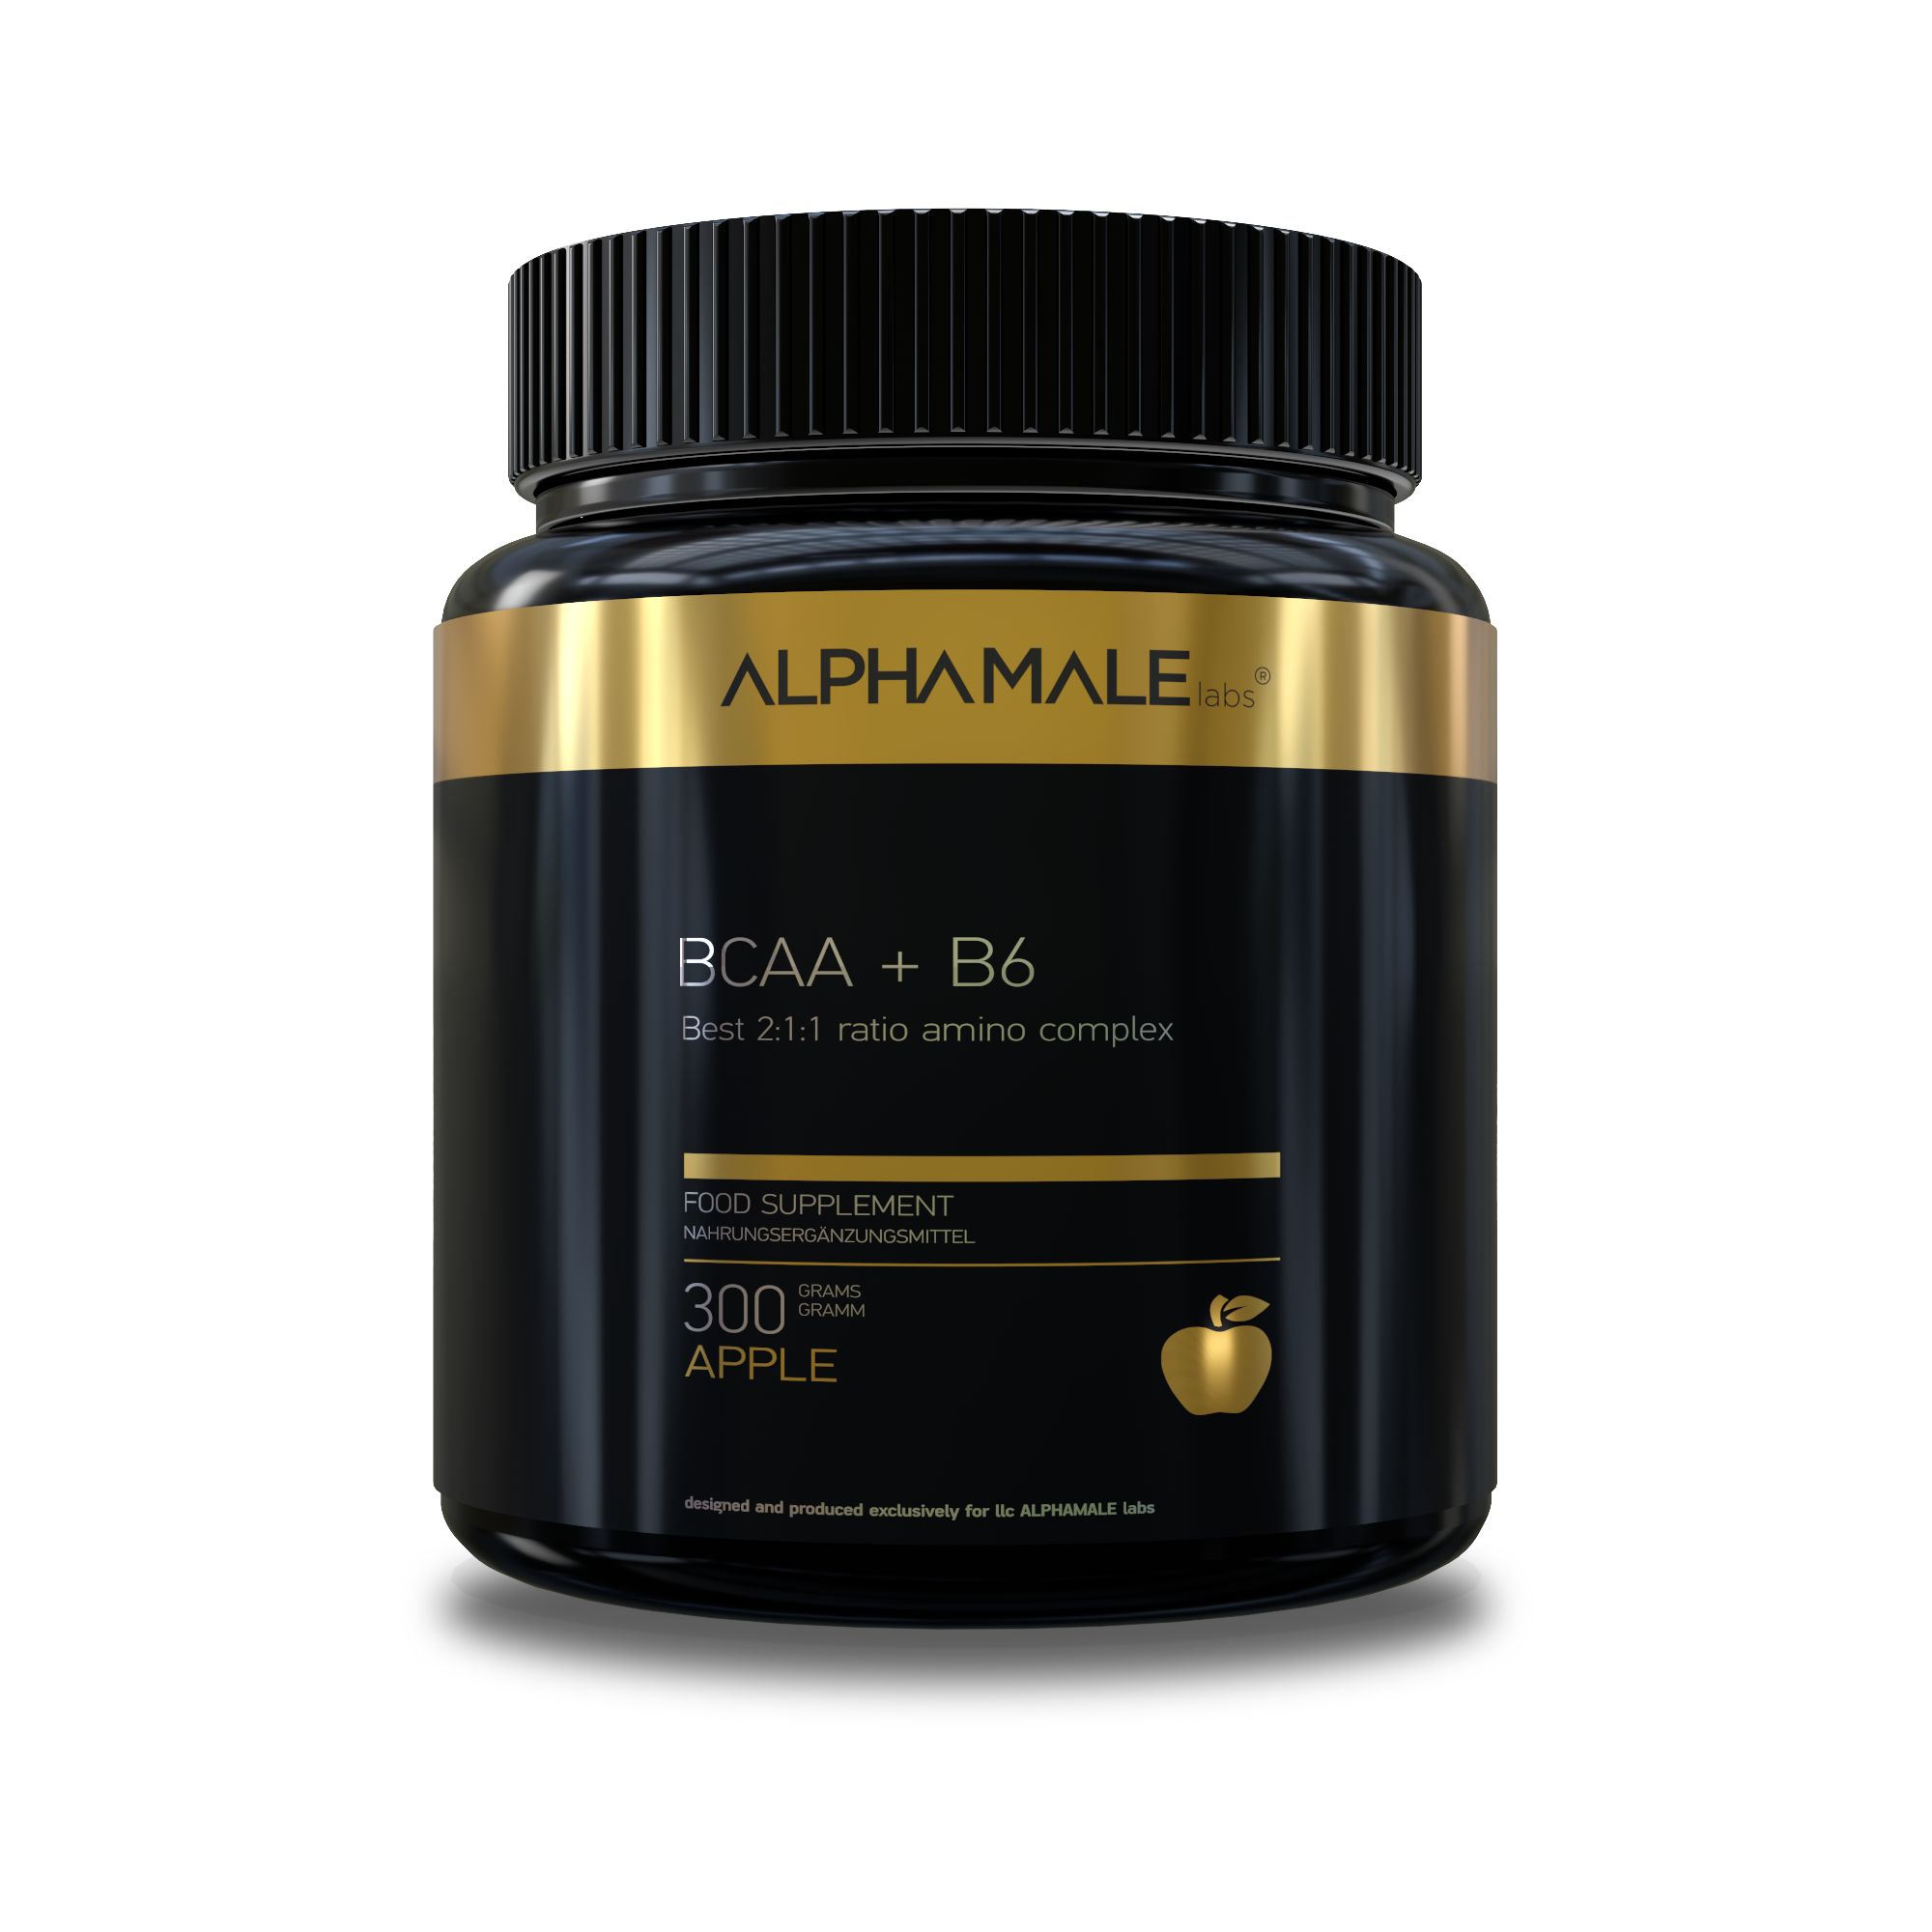 ALPHAMALE labs BCAA+B6 premium 300 г, яблоко